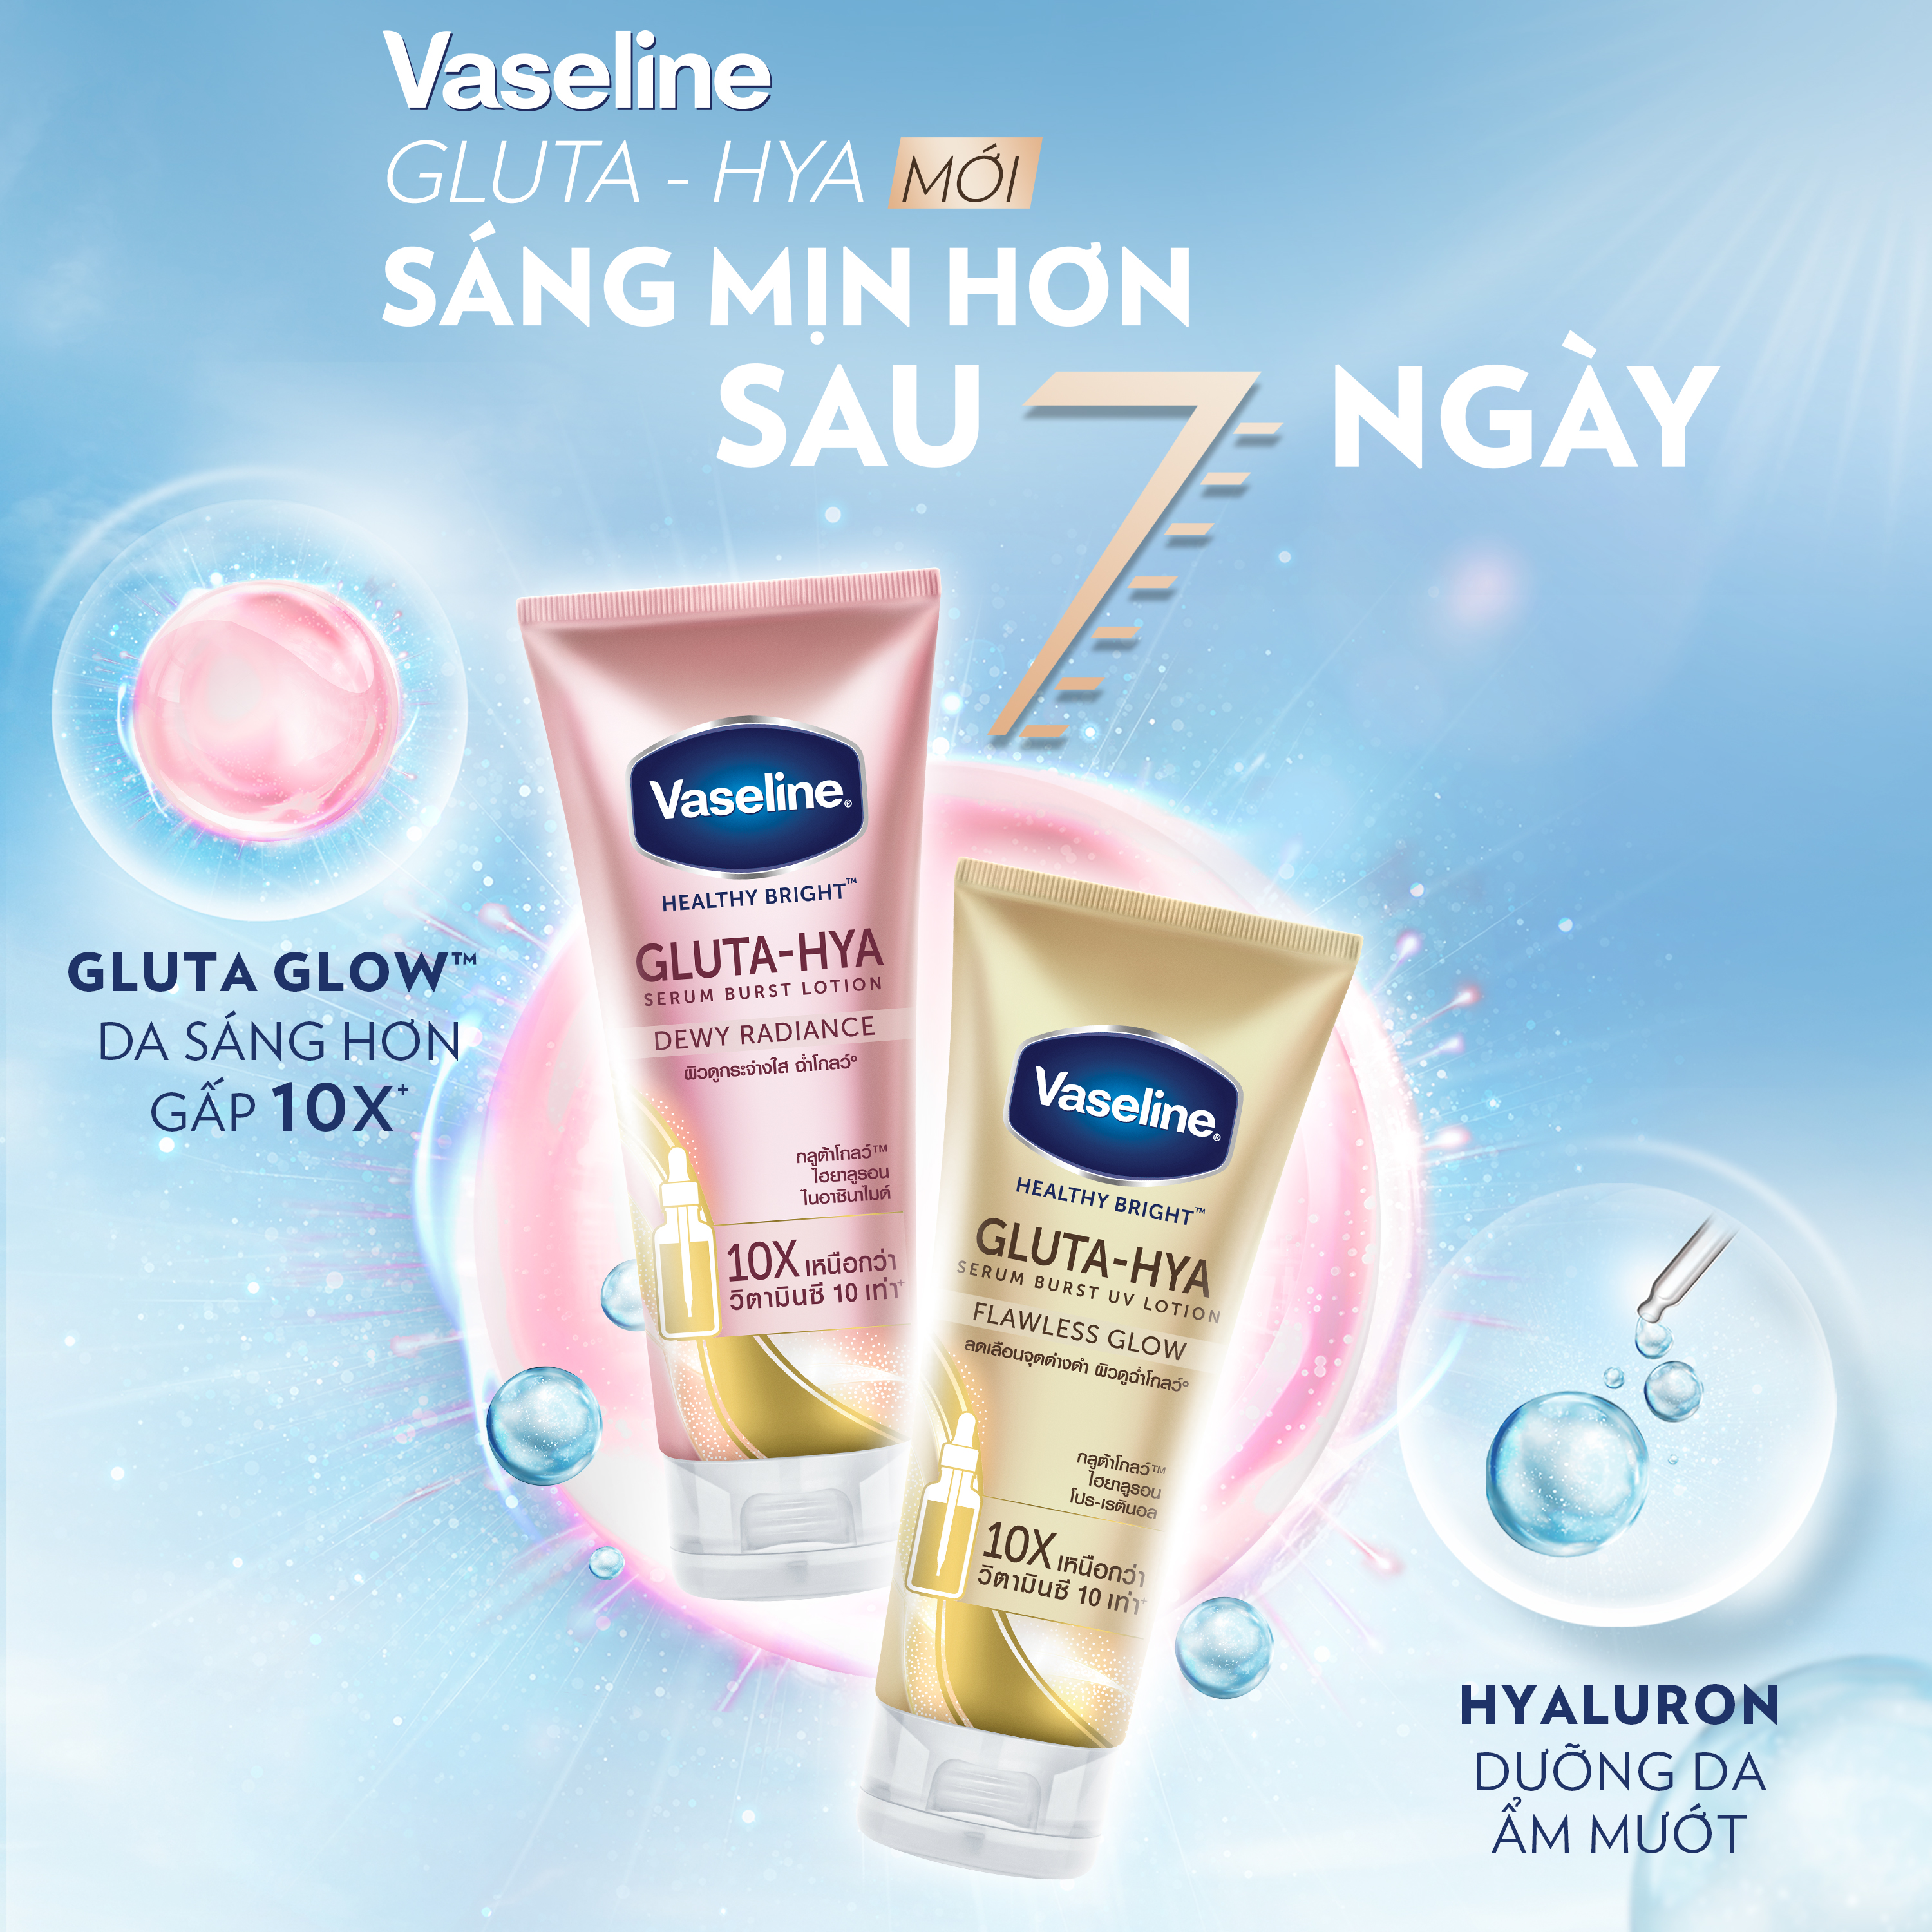 Vaseline Healthy Bright Gluta-Hya Serum Burst UV Lotion Flawless Bright 330ml